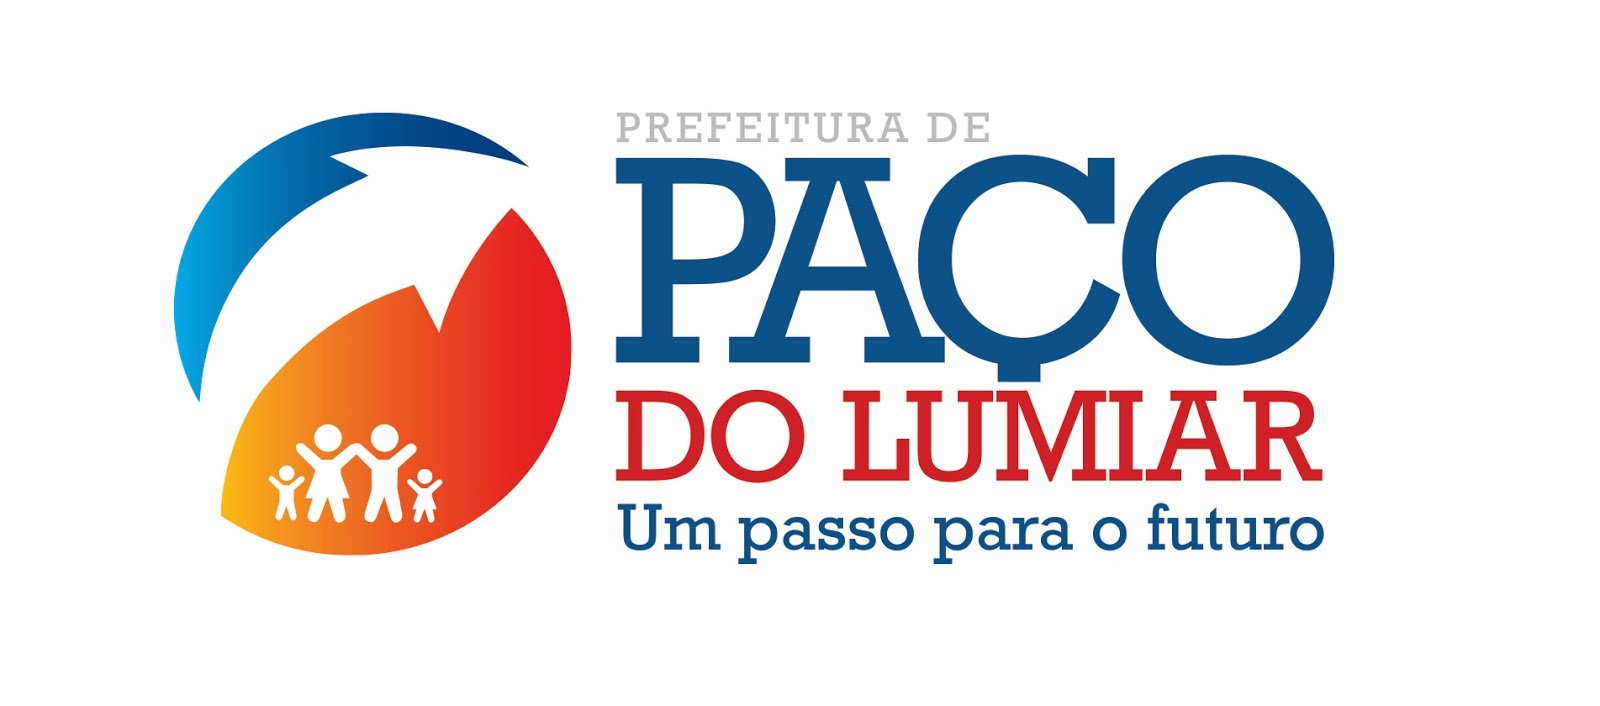 Prefeitura de Paço do Lumiar publica edital para realização de concurso público